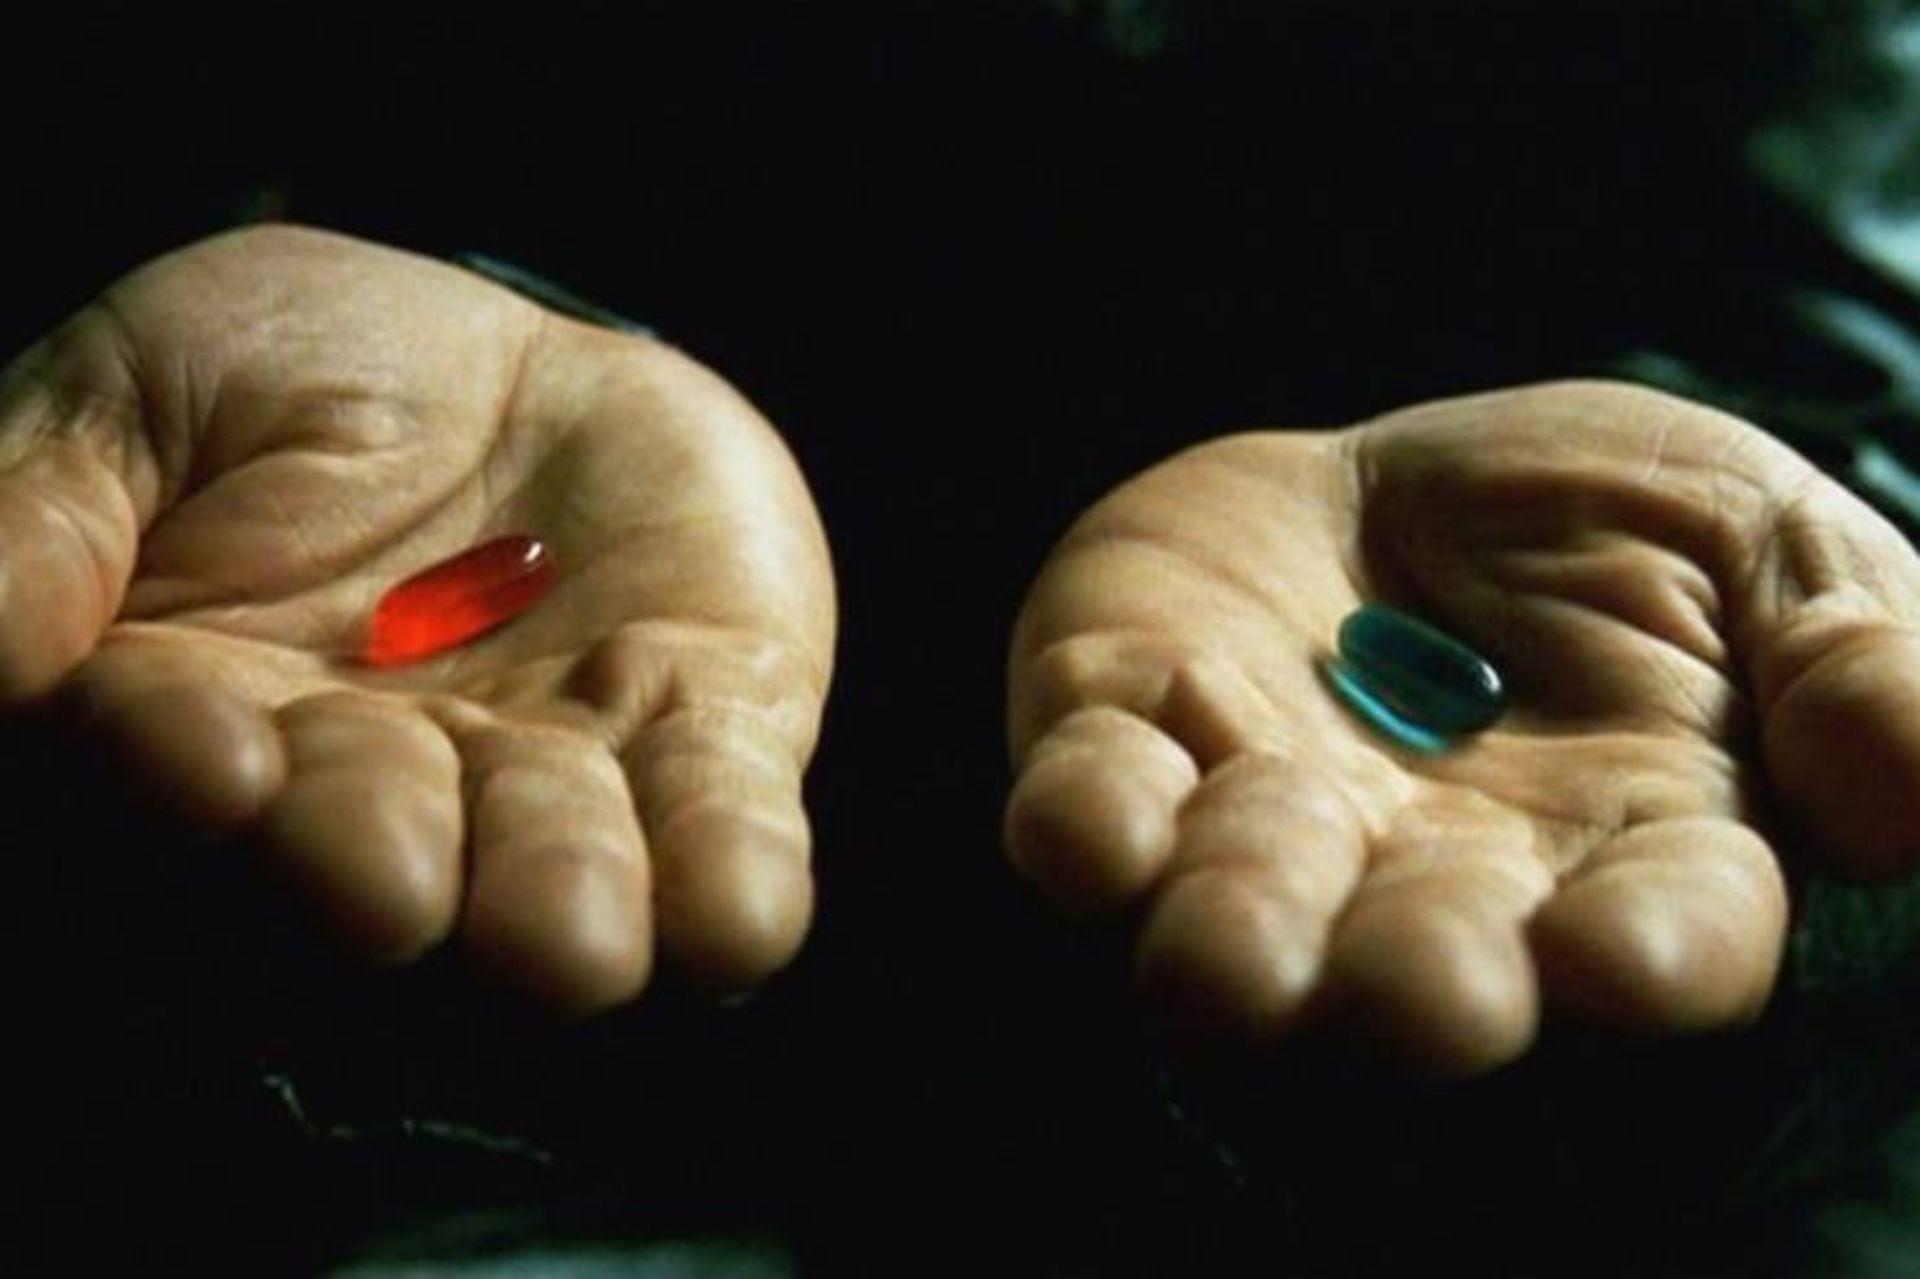 Como en la primera entrega de esta saga, Neo vuelve a elegir la píldora roja, que se supone que lo transporta al mundo real.